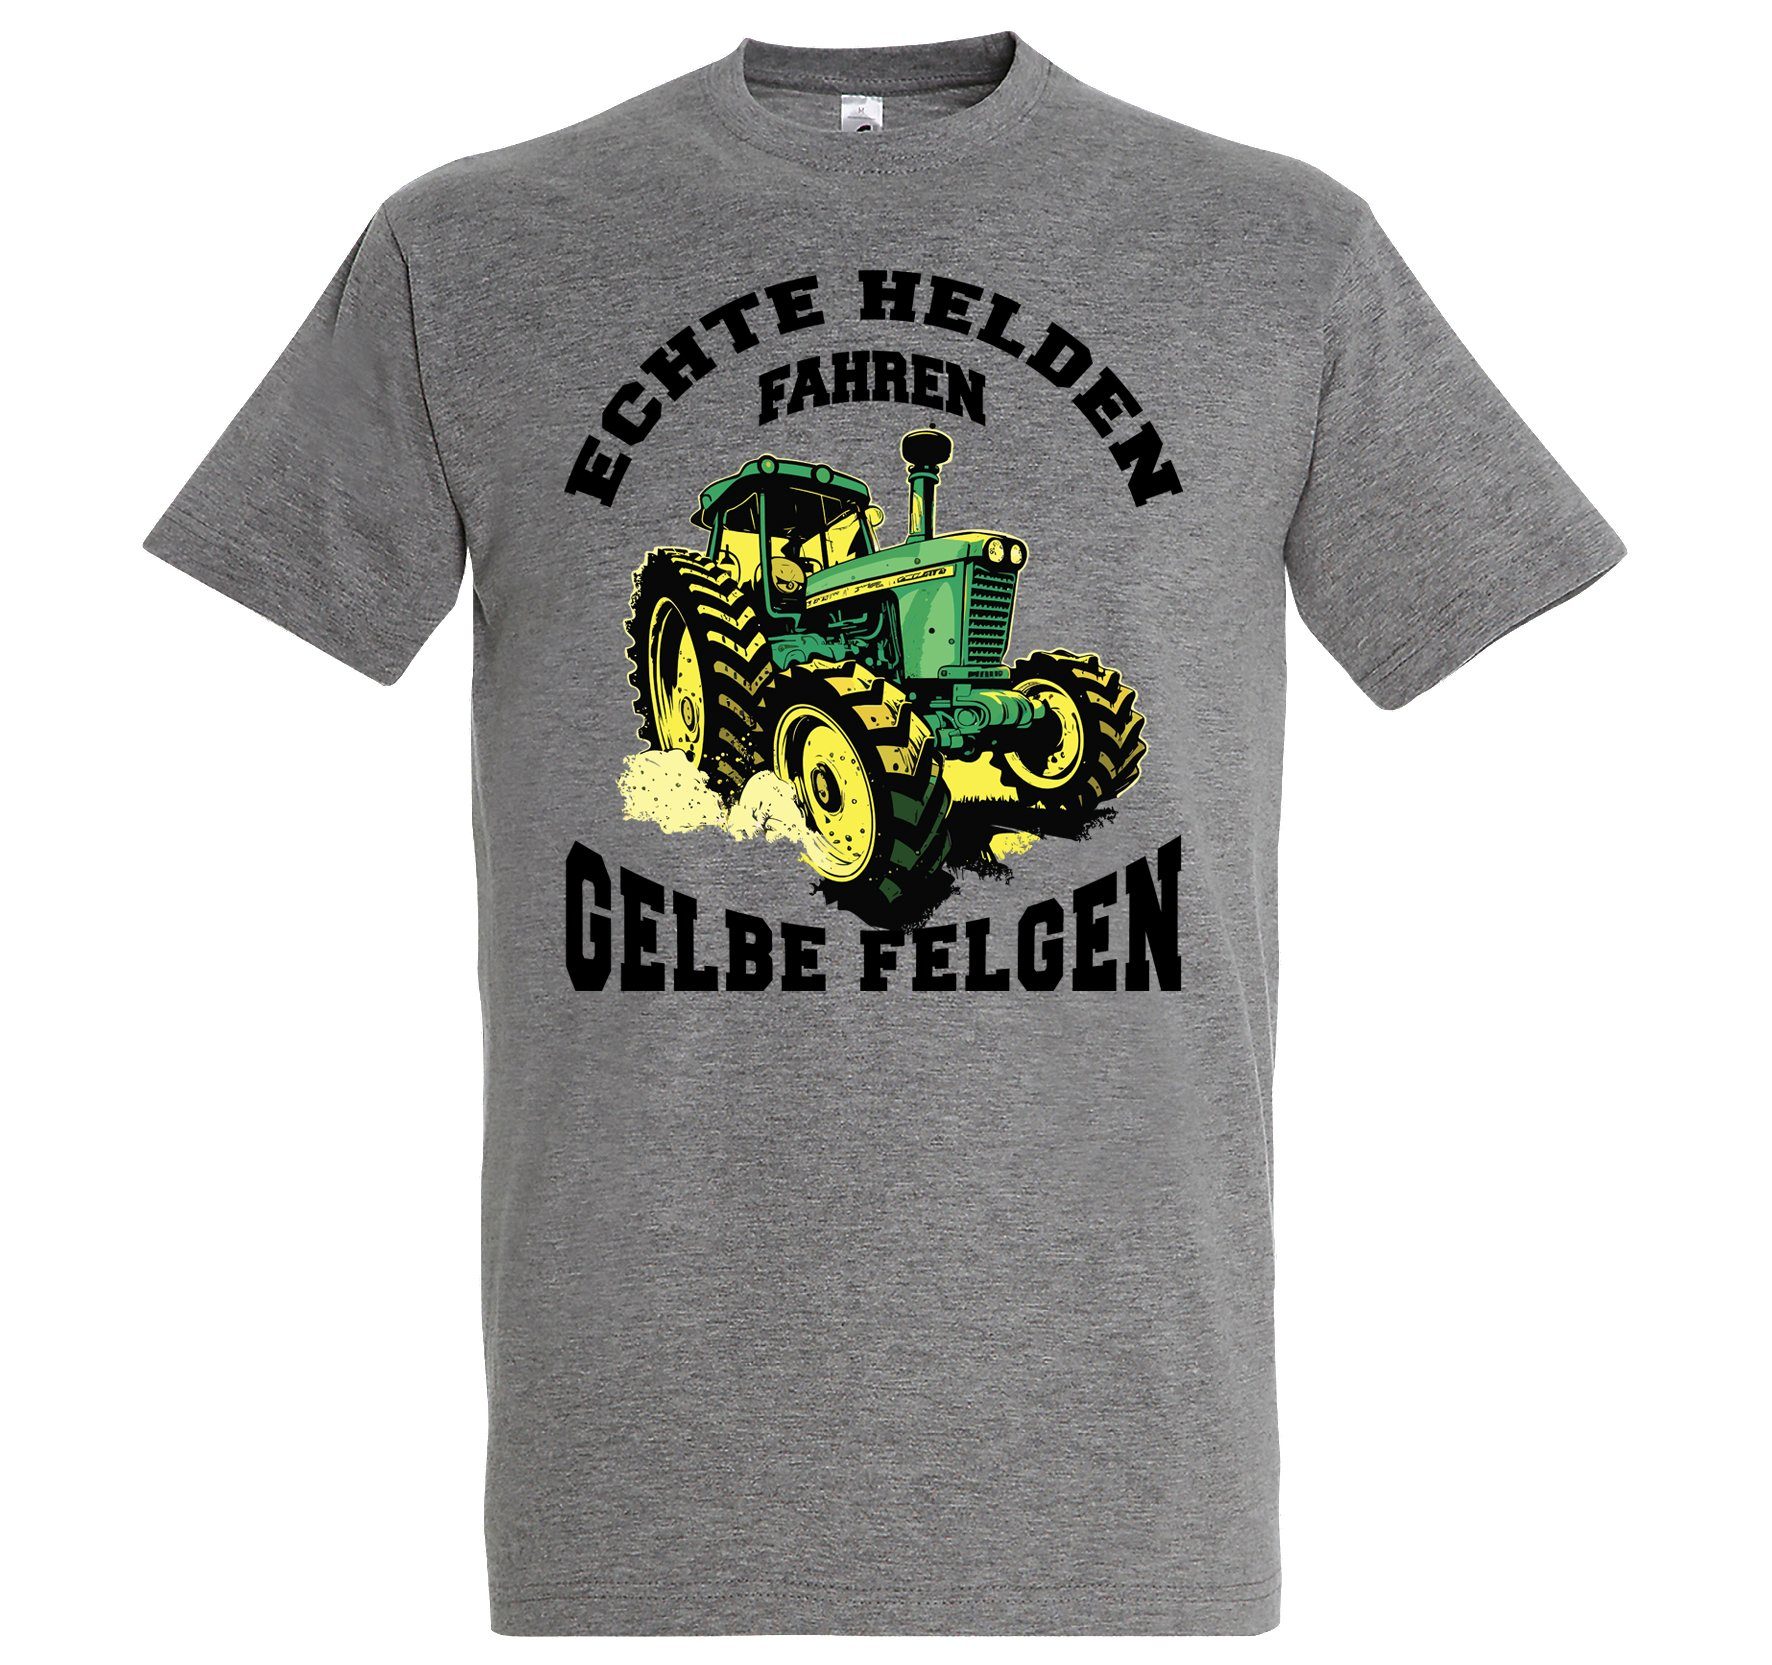 Youth Designz Print-Shirt "Echte Helden fahren gelbe Felgen" Herren T-Shirt mit lustigem Spruch Grau